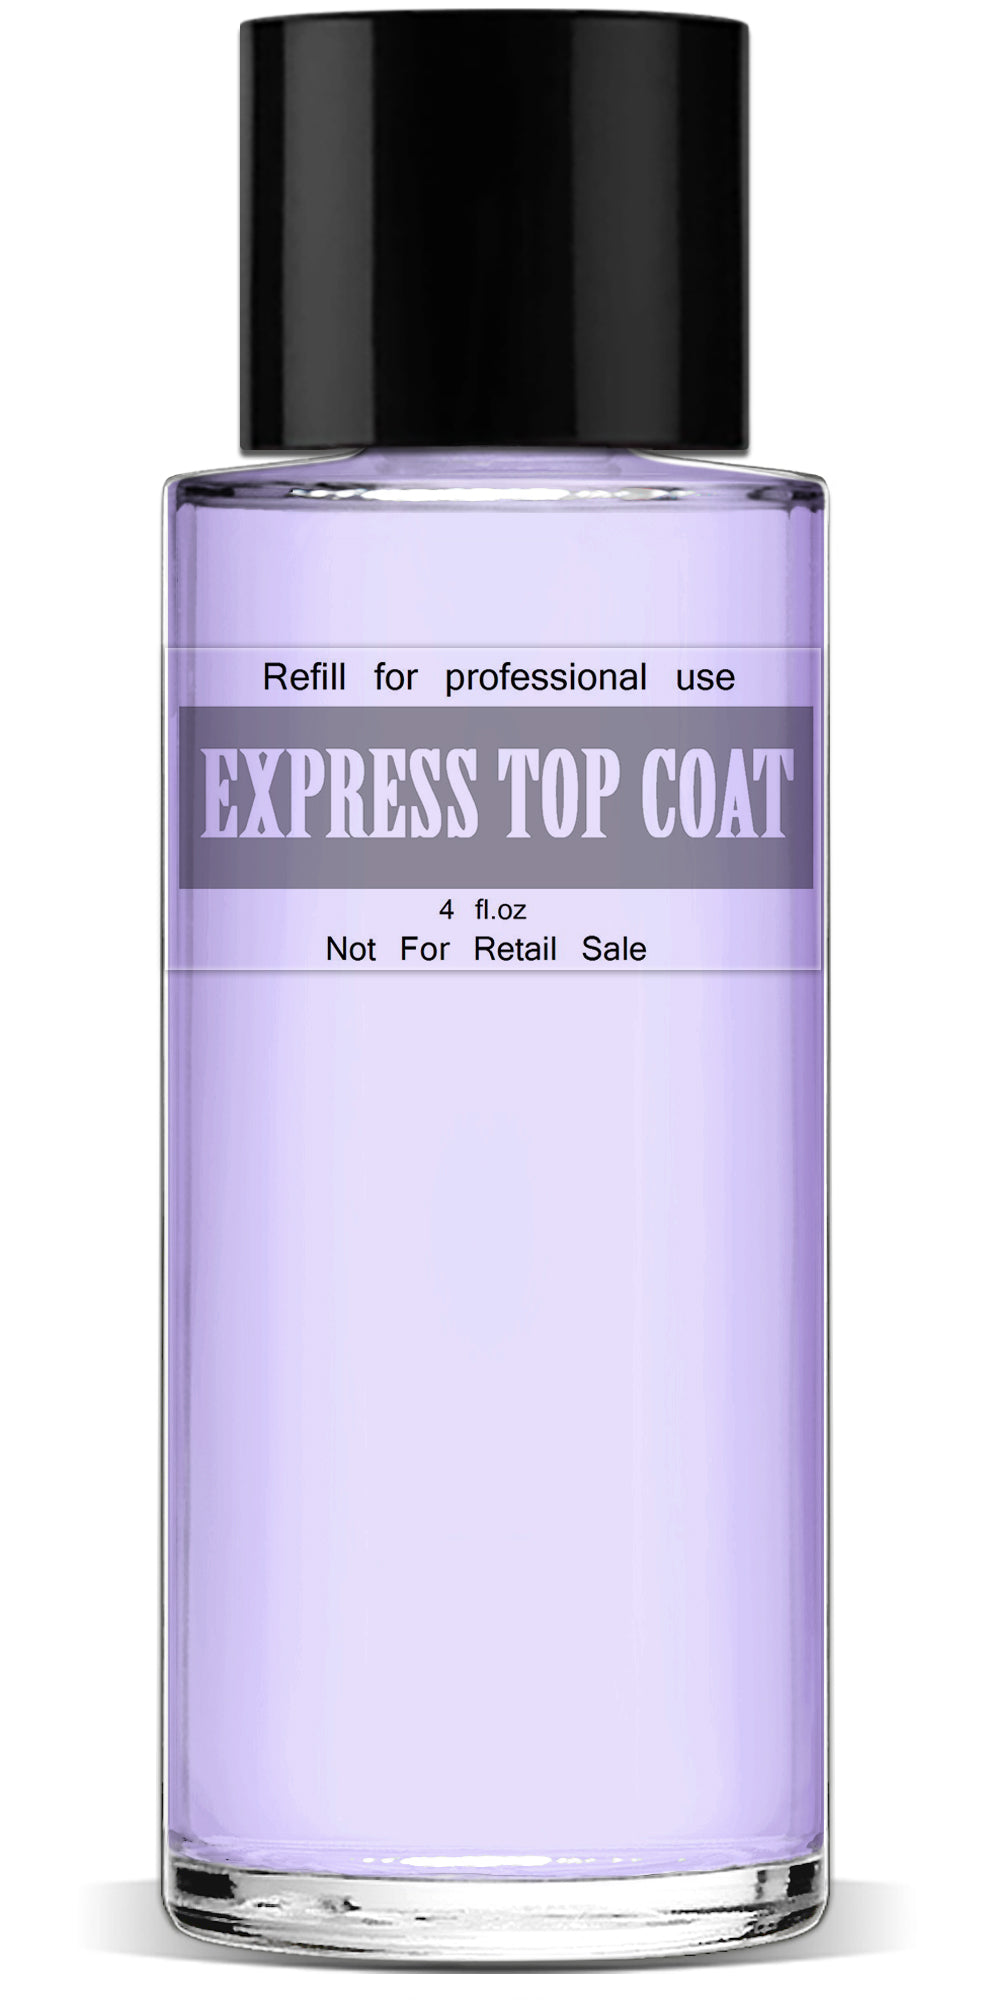 Express Top Coat, 4 fl.oz.